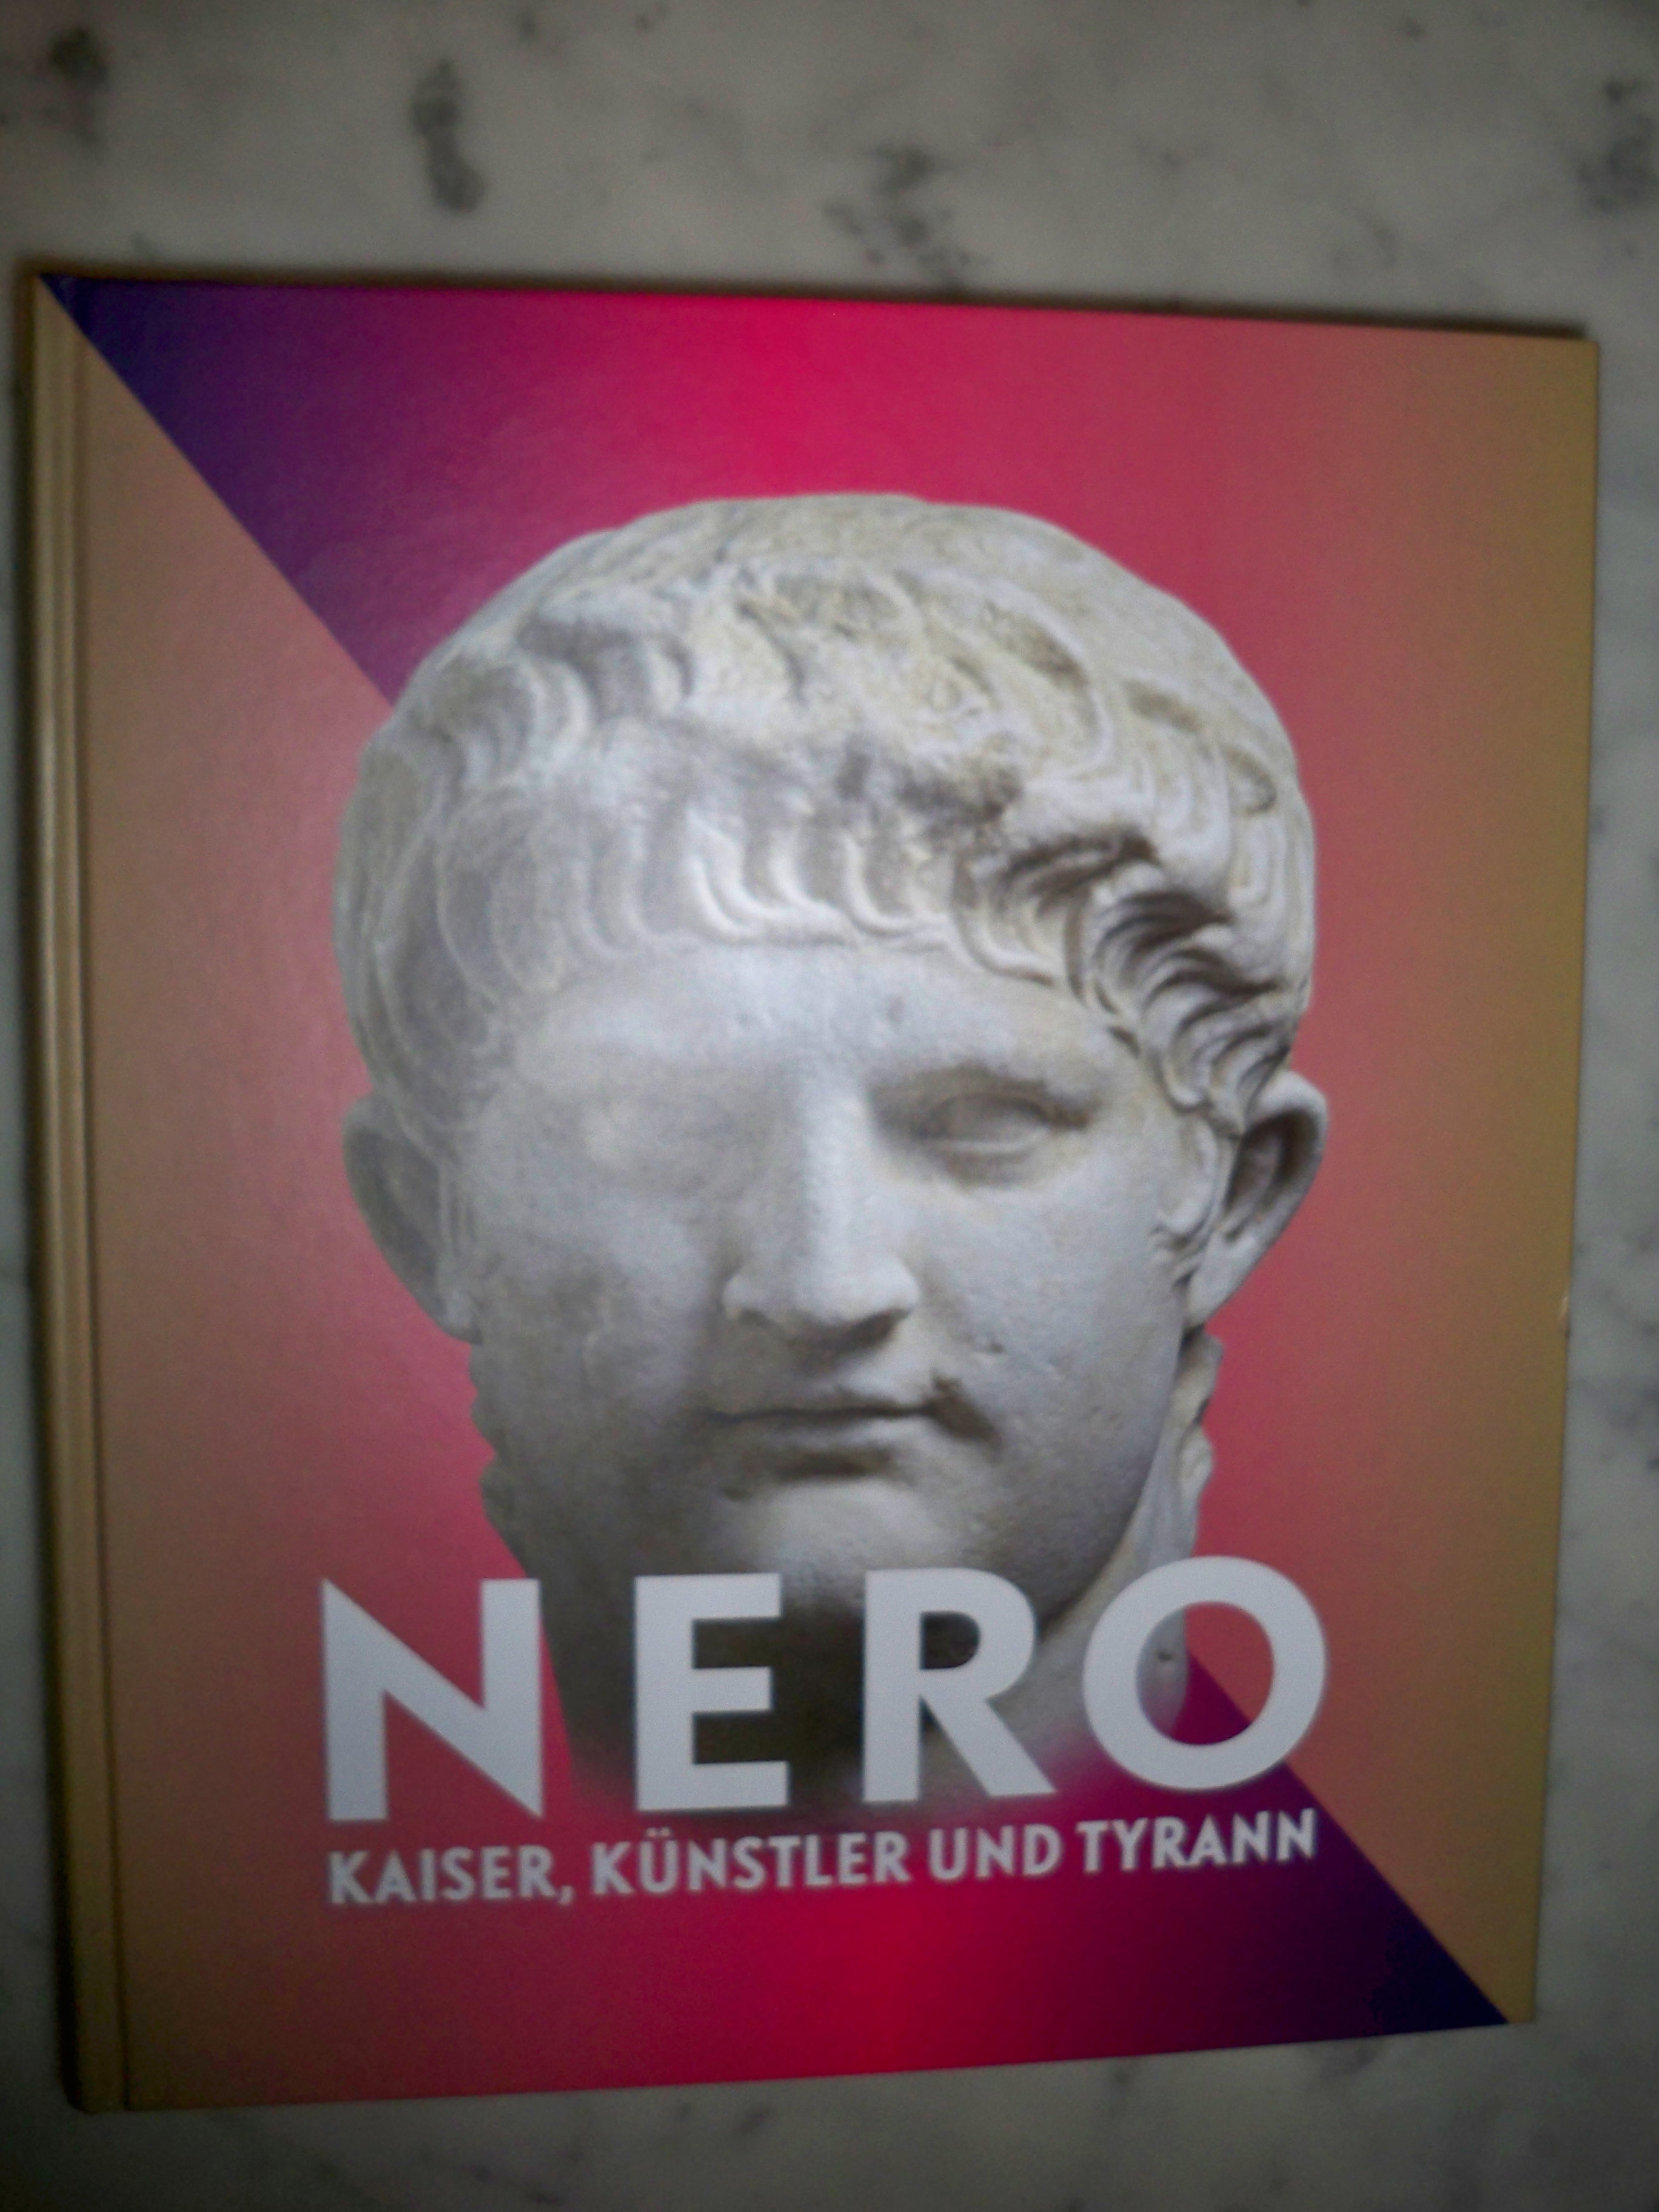 Nero: Kaiser, Künstler und Tyrann - Begleitband zur Ausstellung in Trier vom 14. Mai bis 16. Oktober 2016 - Rheinisches Landesmuseum Trier (Hrsg.)